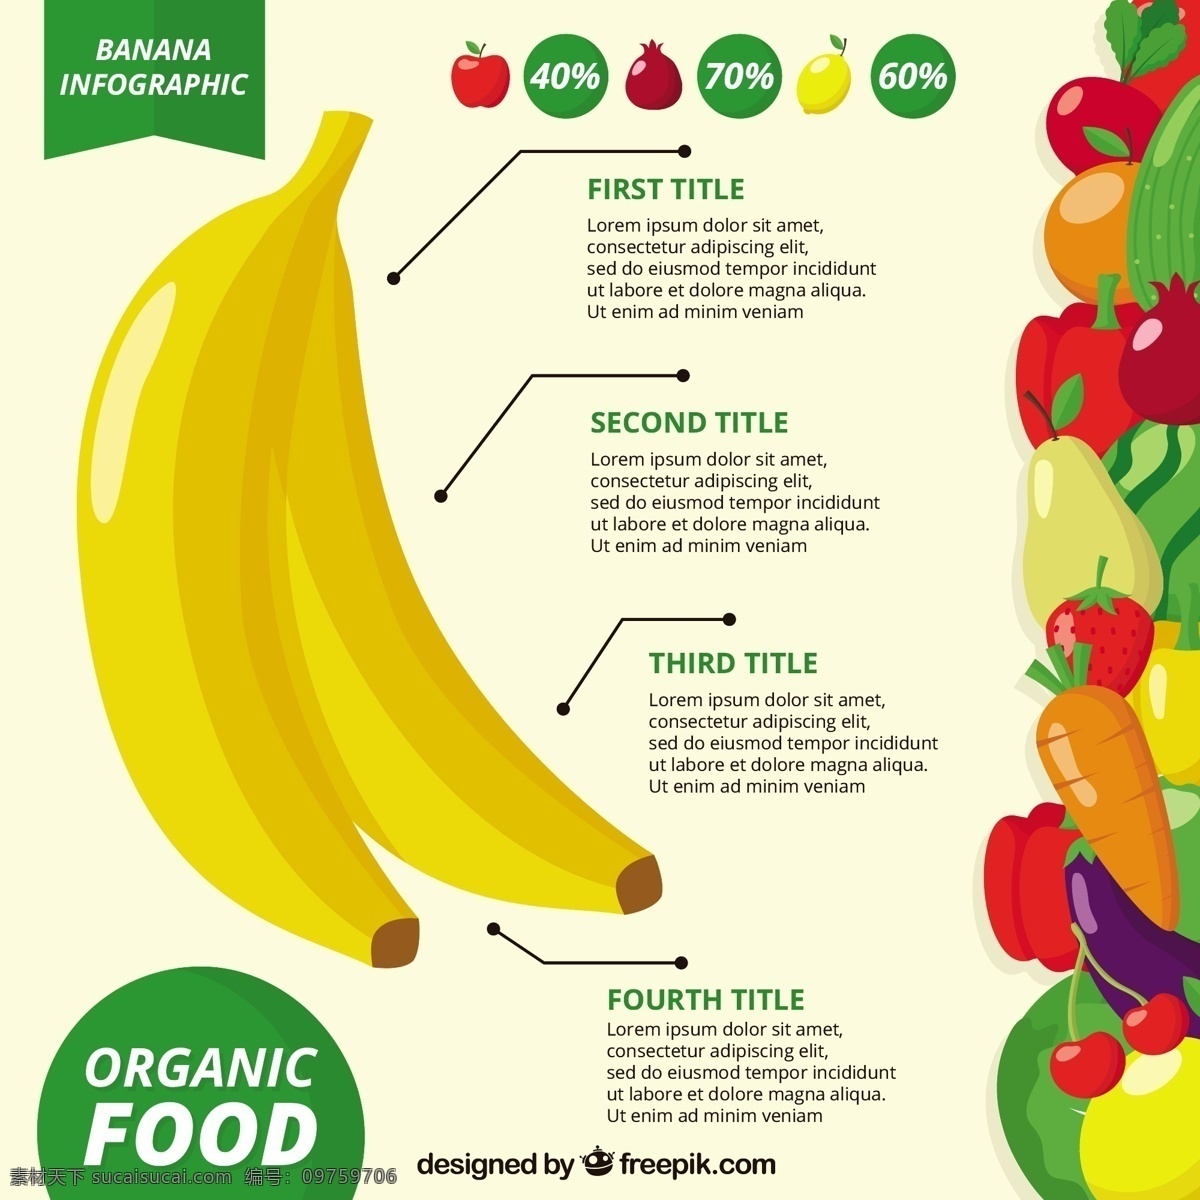 均衡 饮食 图表 食品 商业 模板 水果 蔬菜 水果市场 图 烹饪 工艺 图表模板 数据 信息 香蕉 健康 业务信息图表